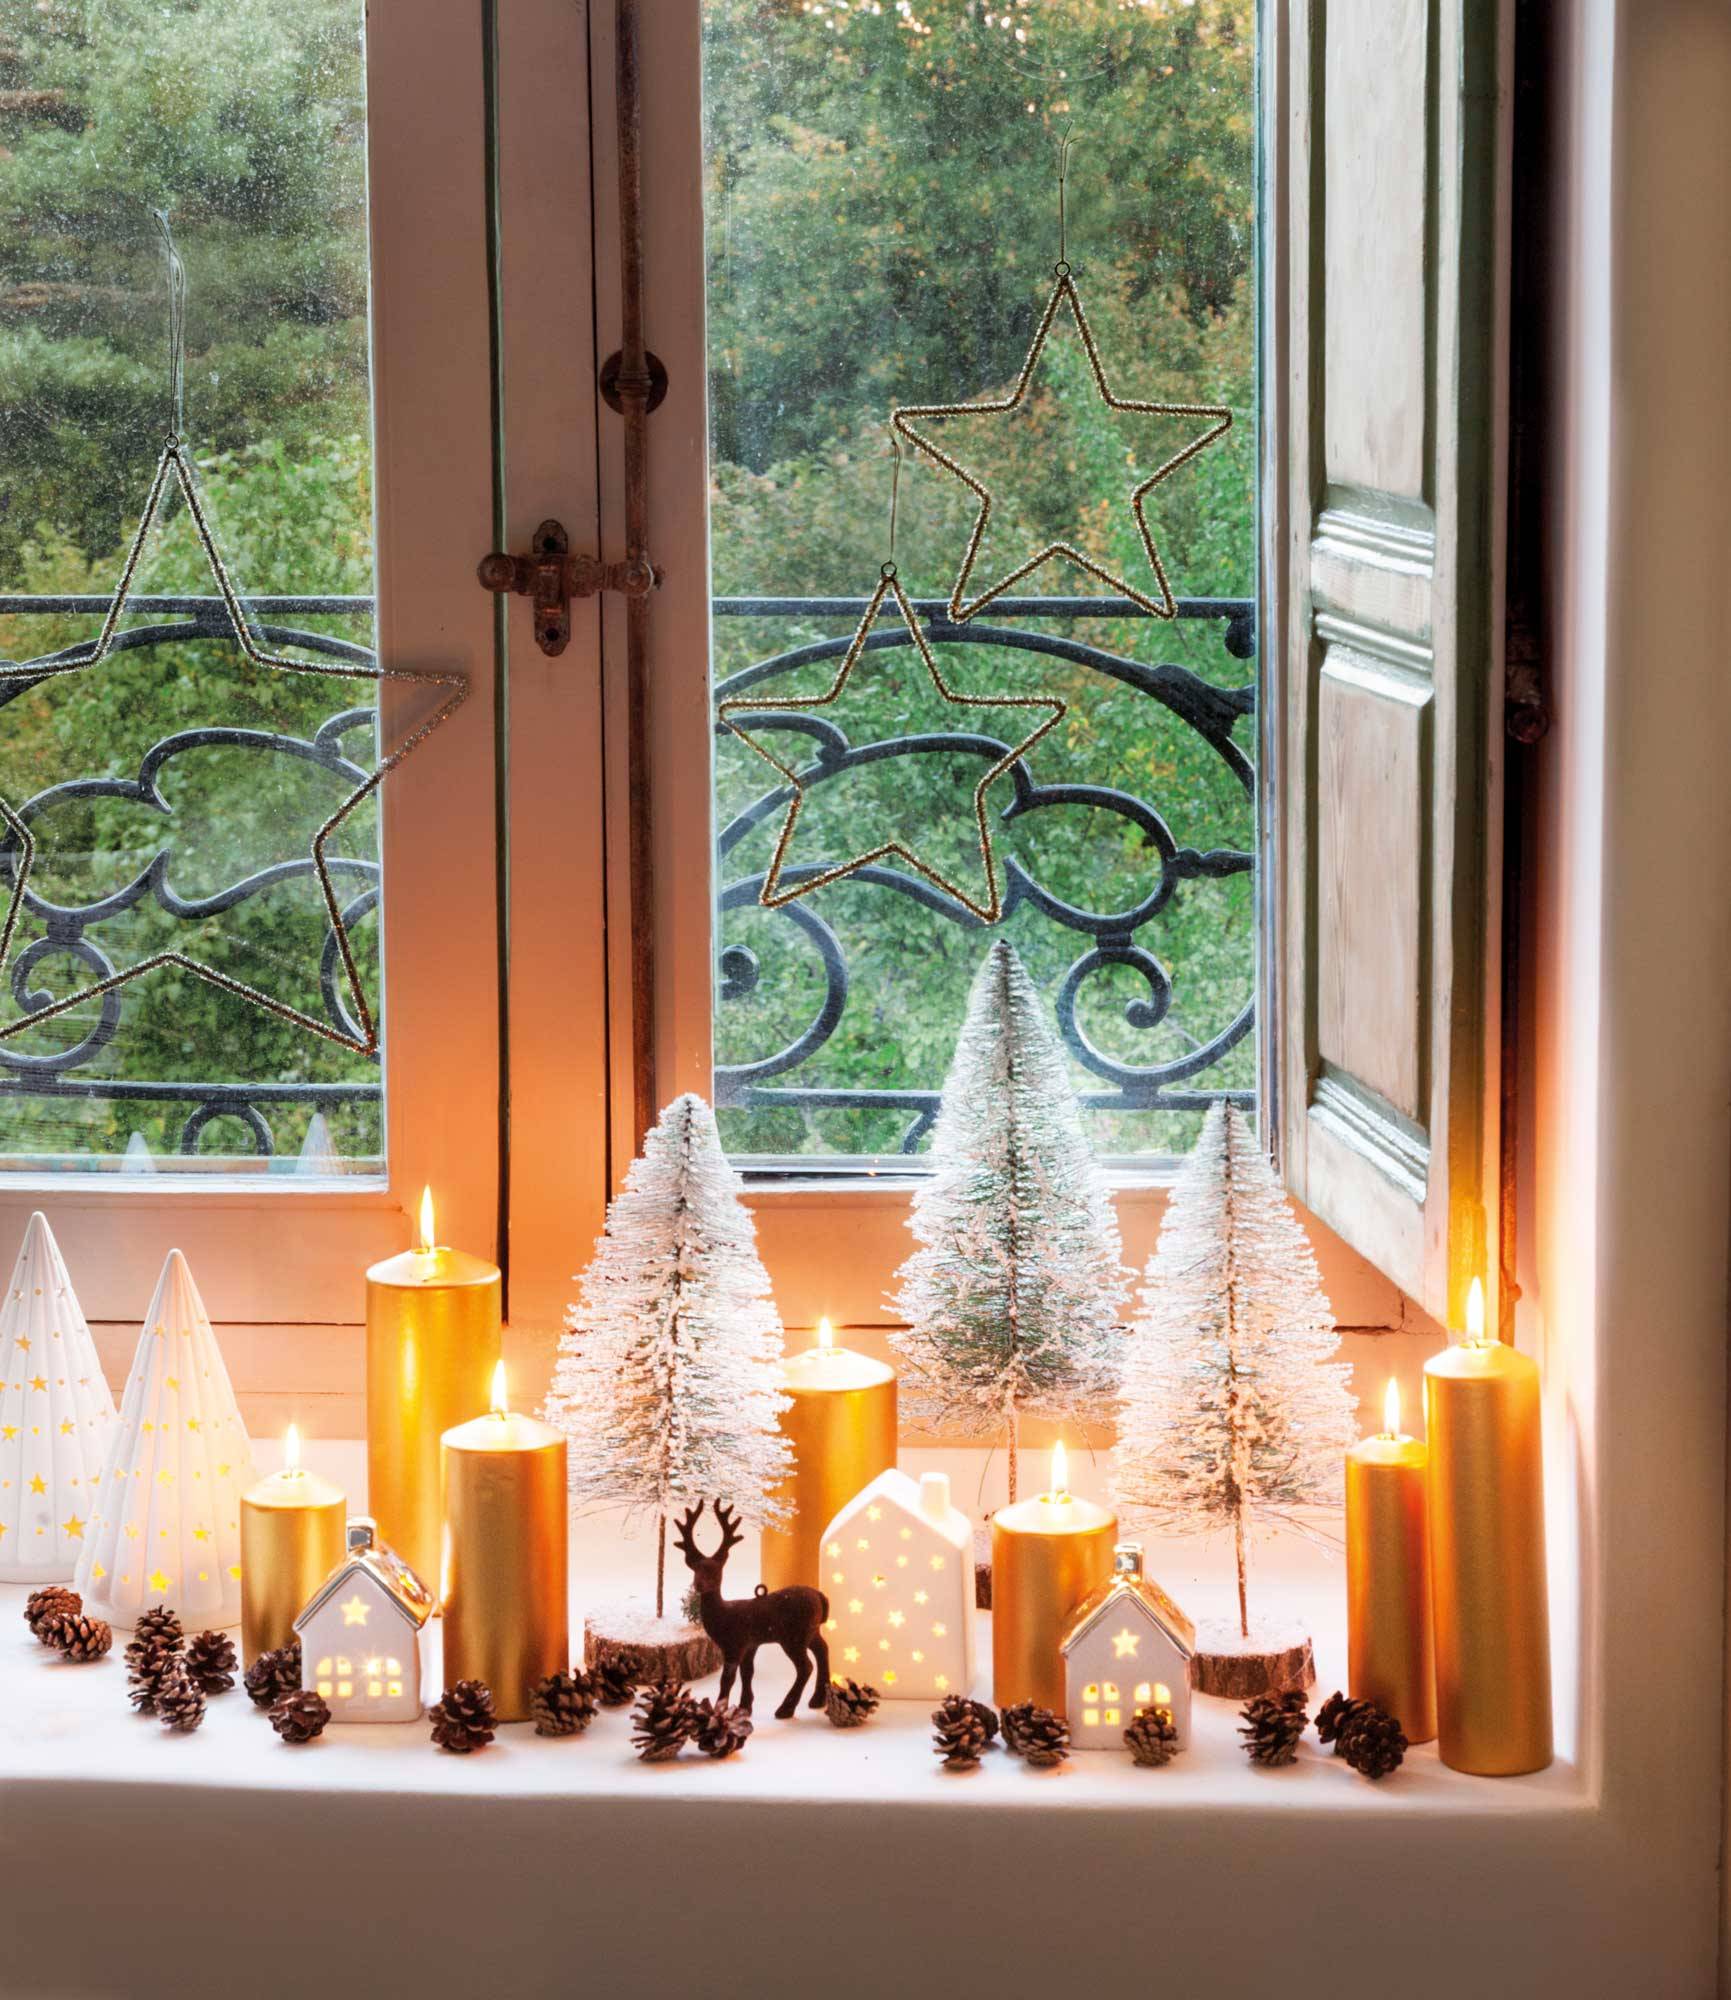 Ventana con adornos navideños de velas, arbolitos y piñas.